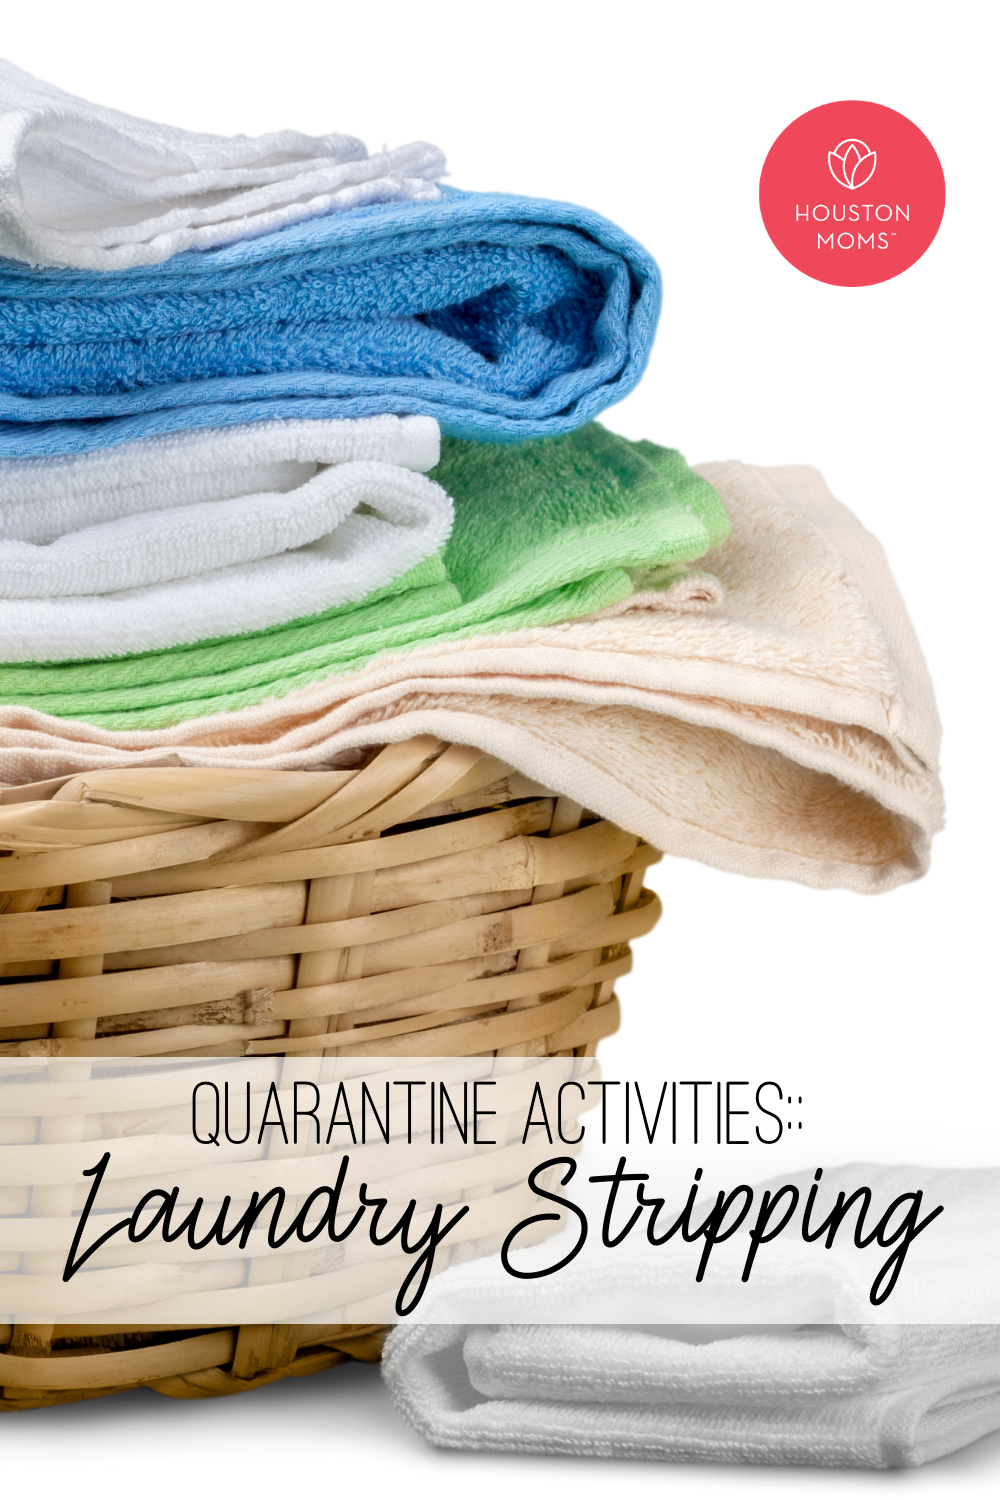 Houston Moms "Quarantine Activities:: Laundry Stripping" #houstonmoms #houstonmomsblog #momsaroundhouston